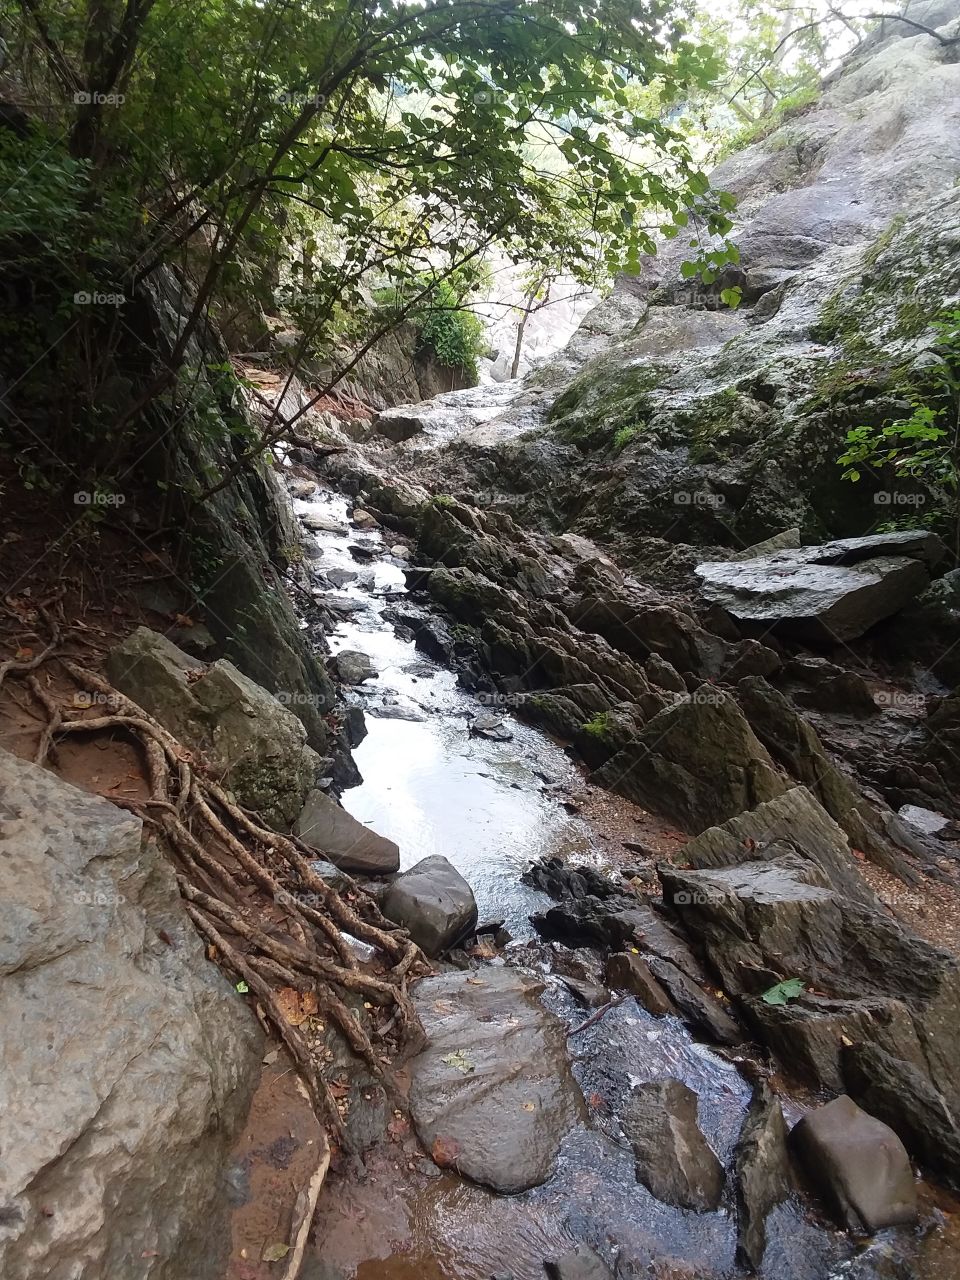 Greatfalls nature trail